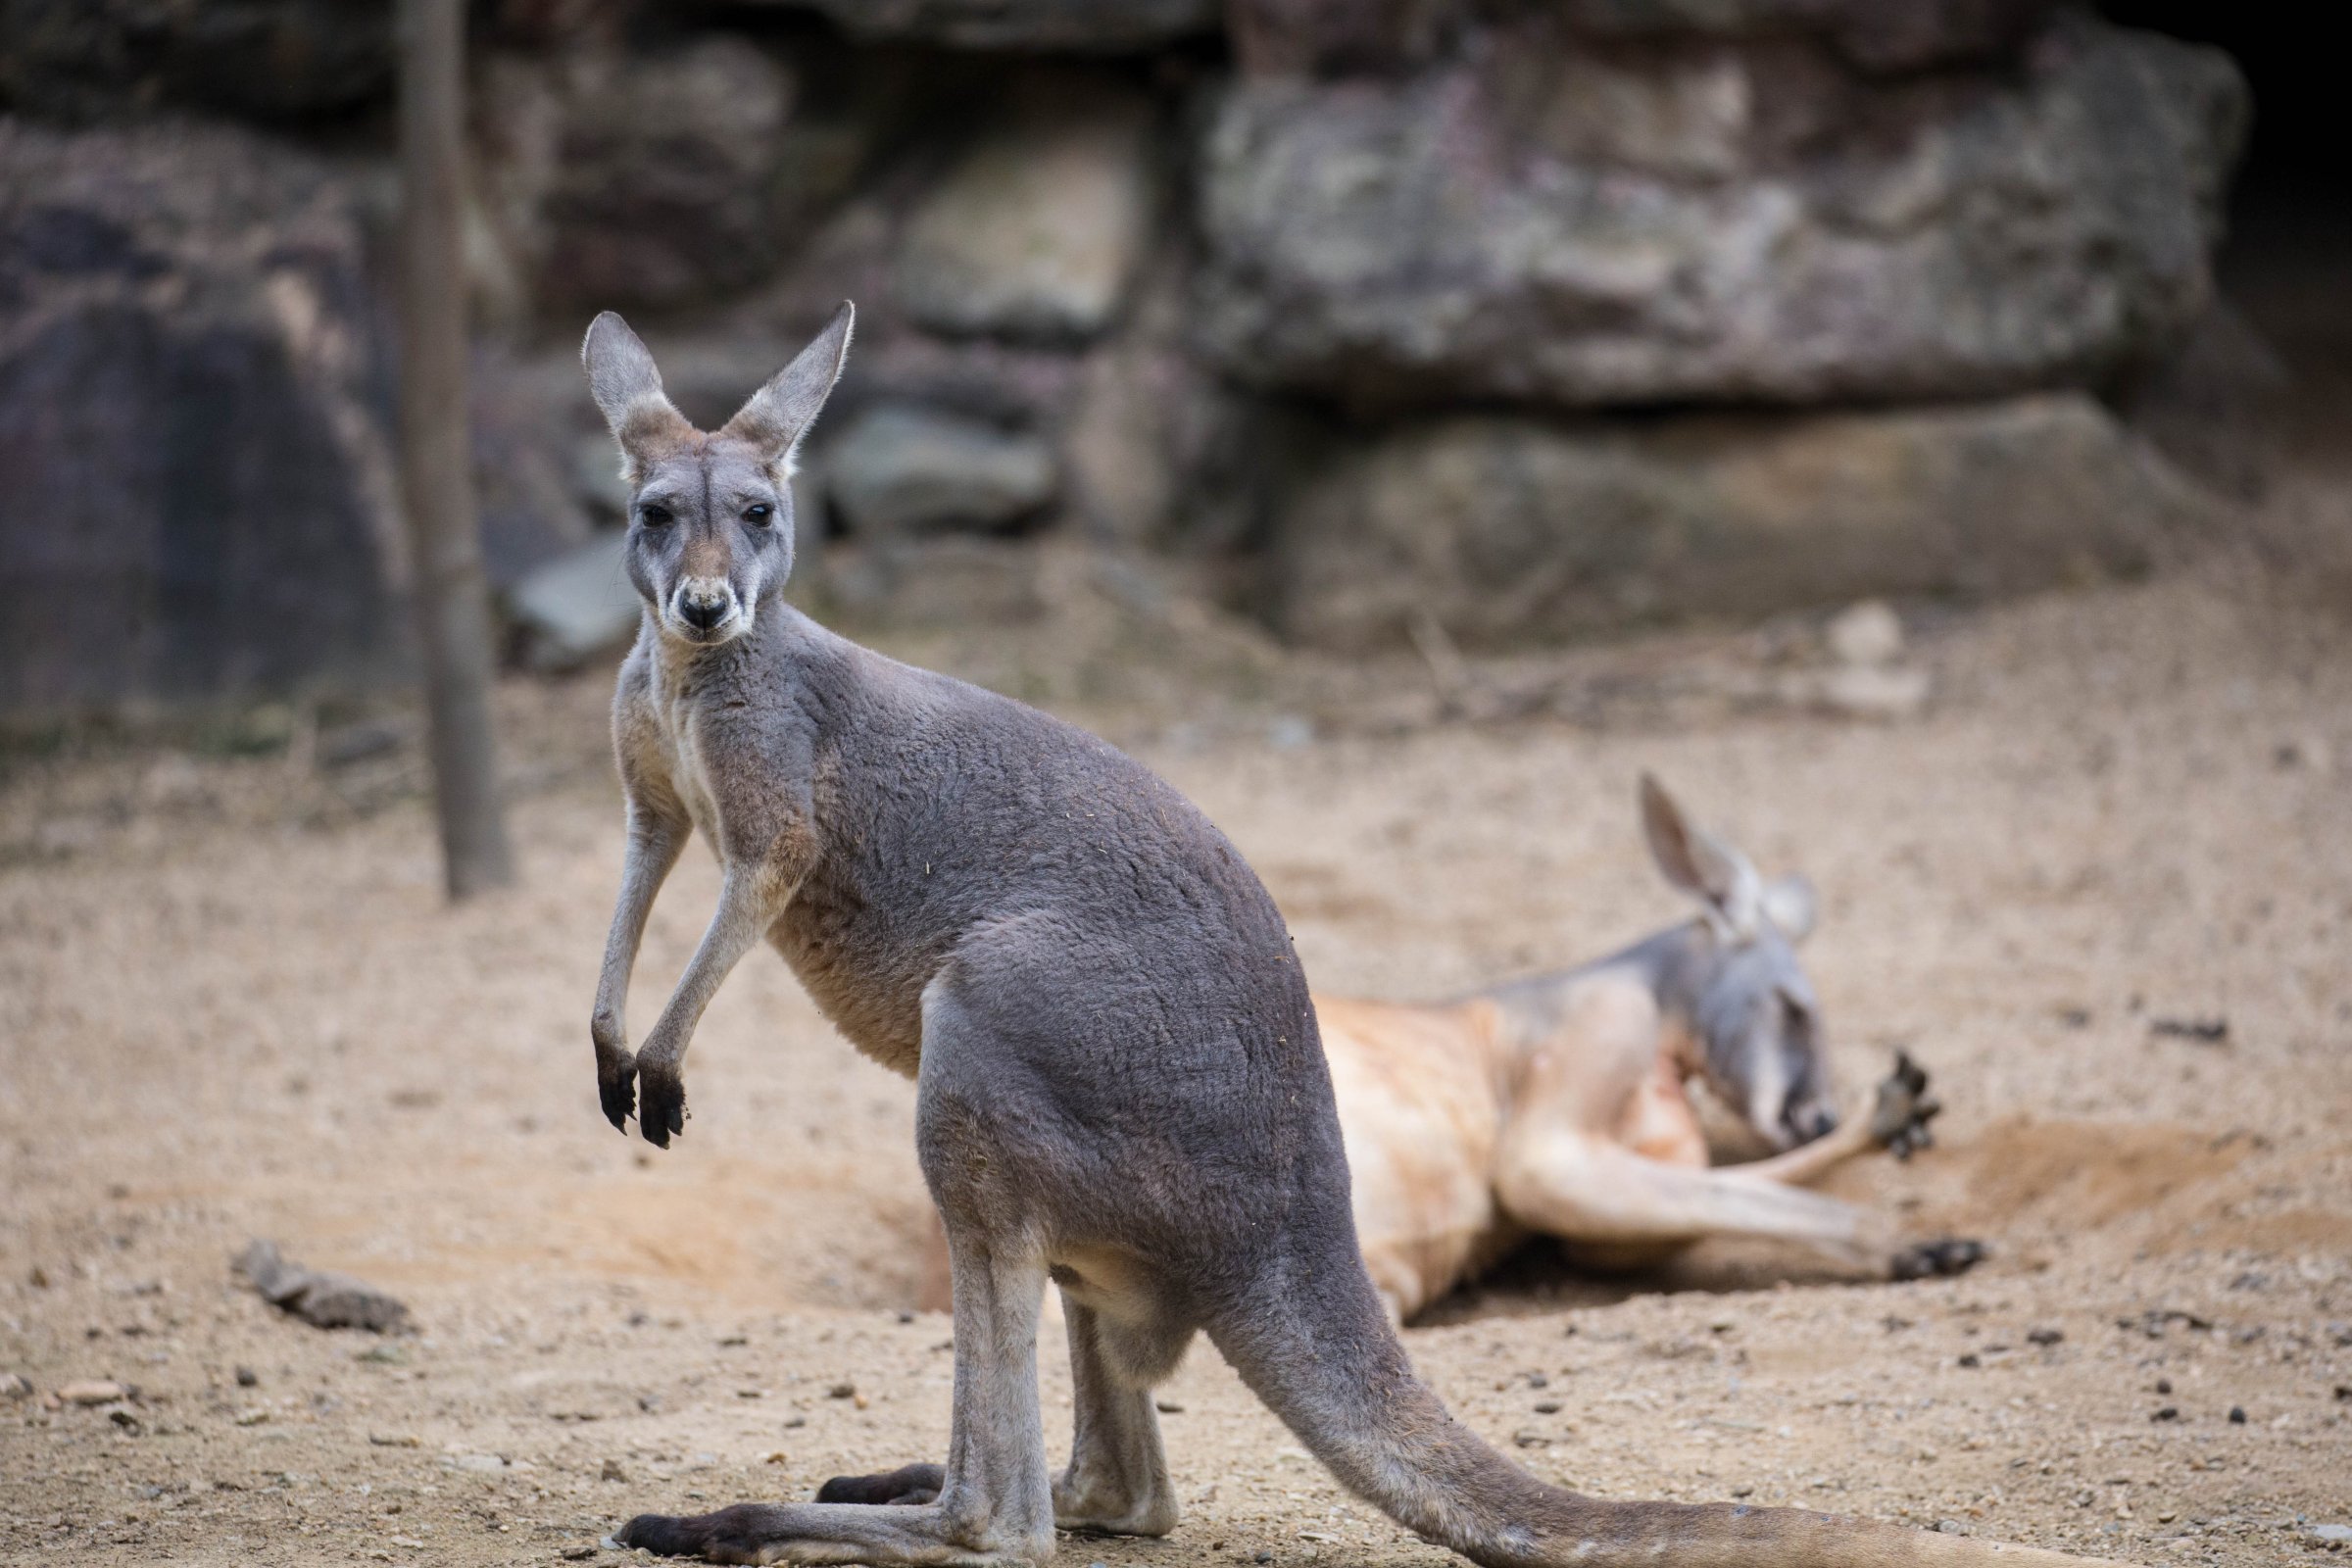 Kangaroos Dig Holes And Lie Down In Hangzhou Zoo